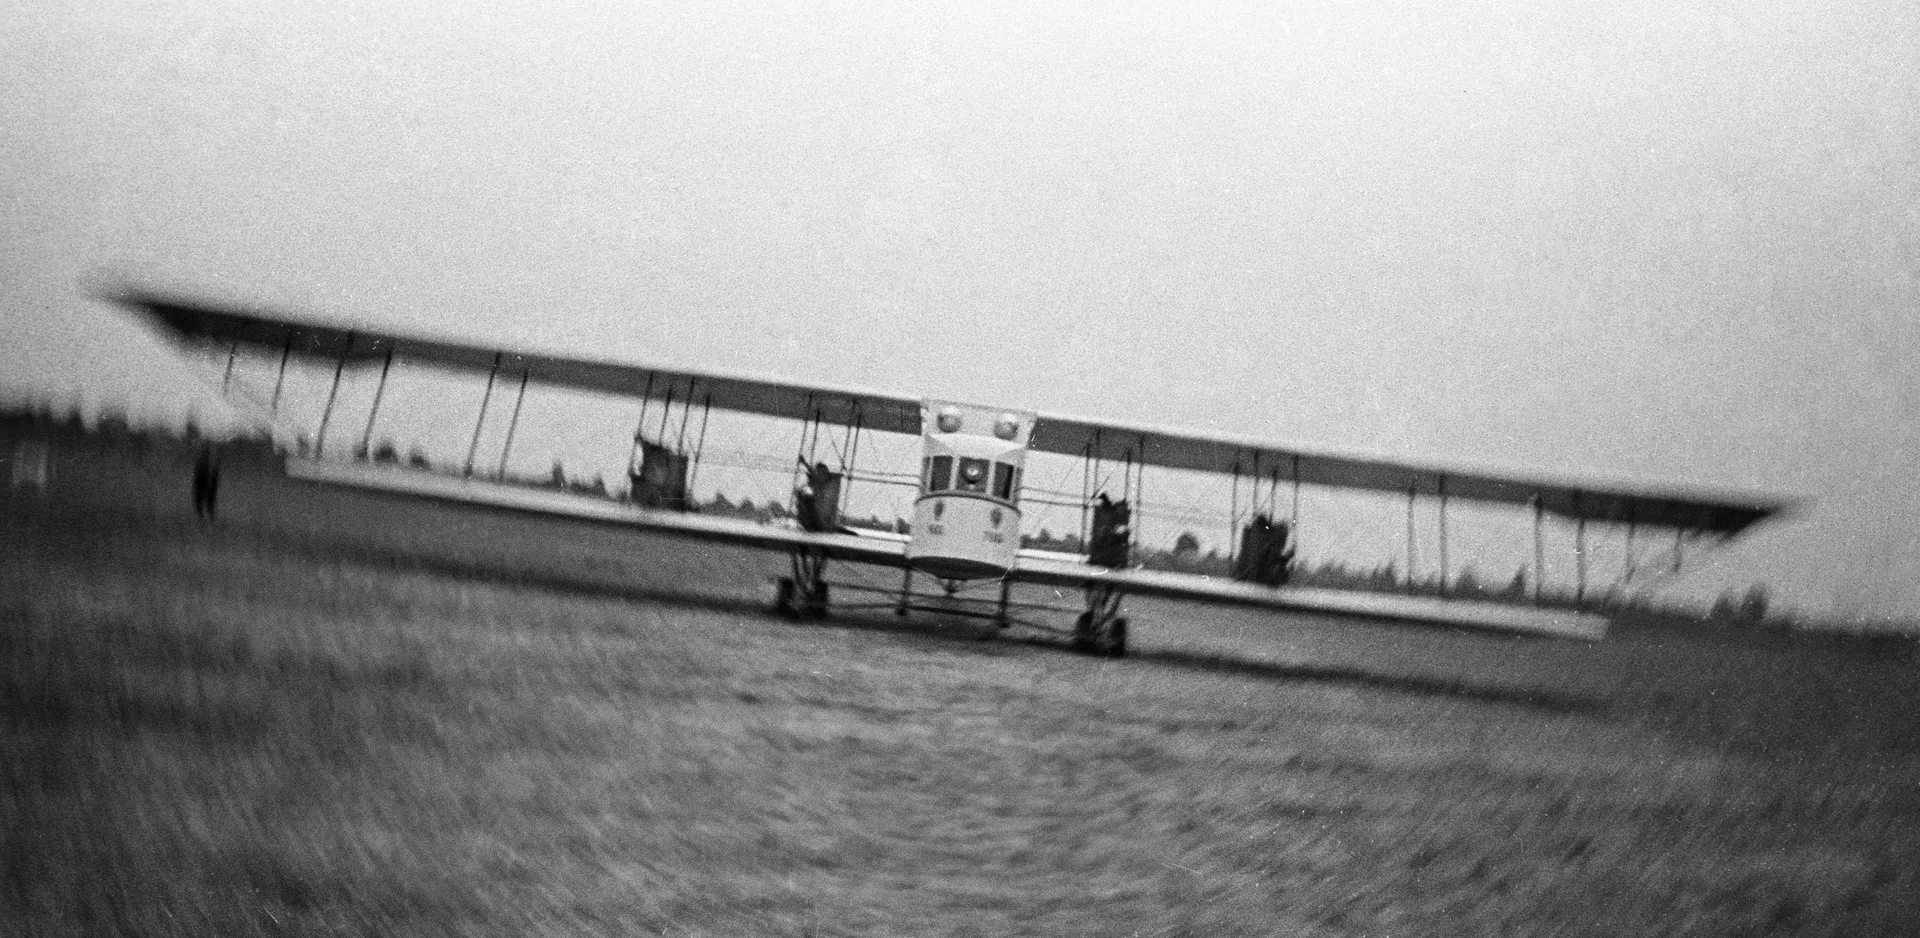 4 発エンジンの航空機イリヤ ムーロメッツ - RIA ノーボスチ、1920 年、2023 年 12 月 22 日